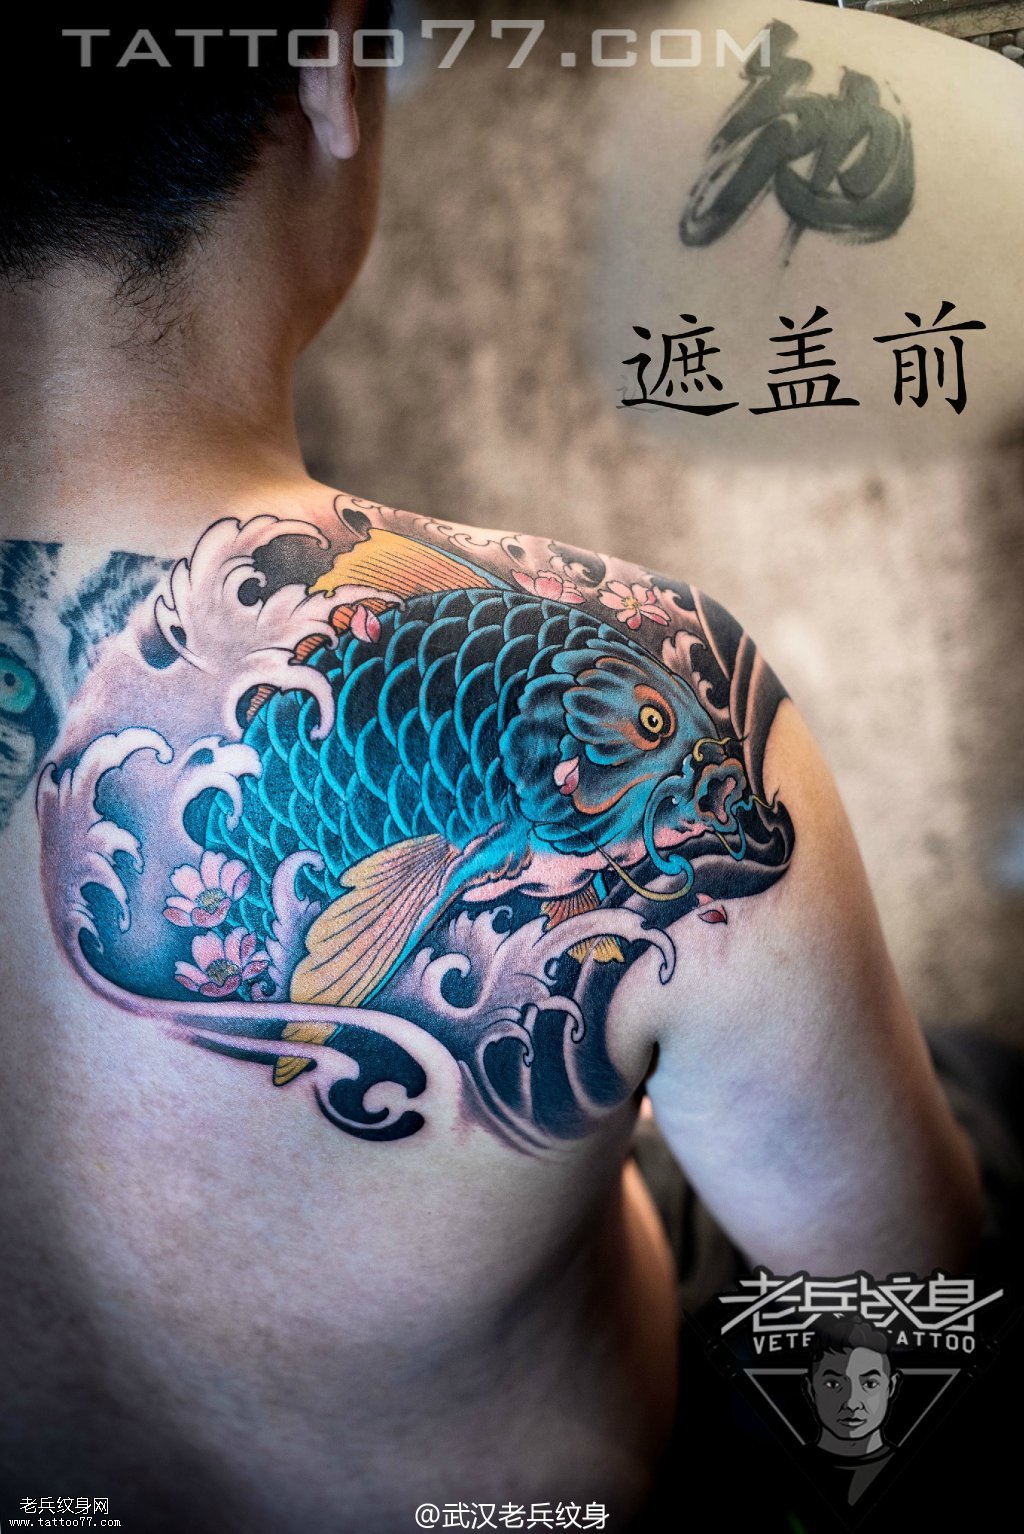 后背蓝色鲤鱼纹身图案作品遮盖旧纹身